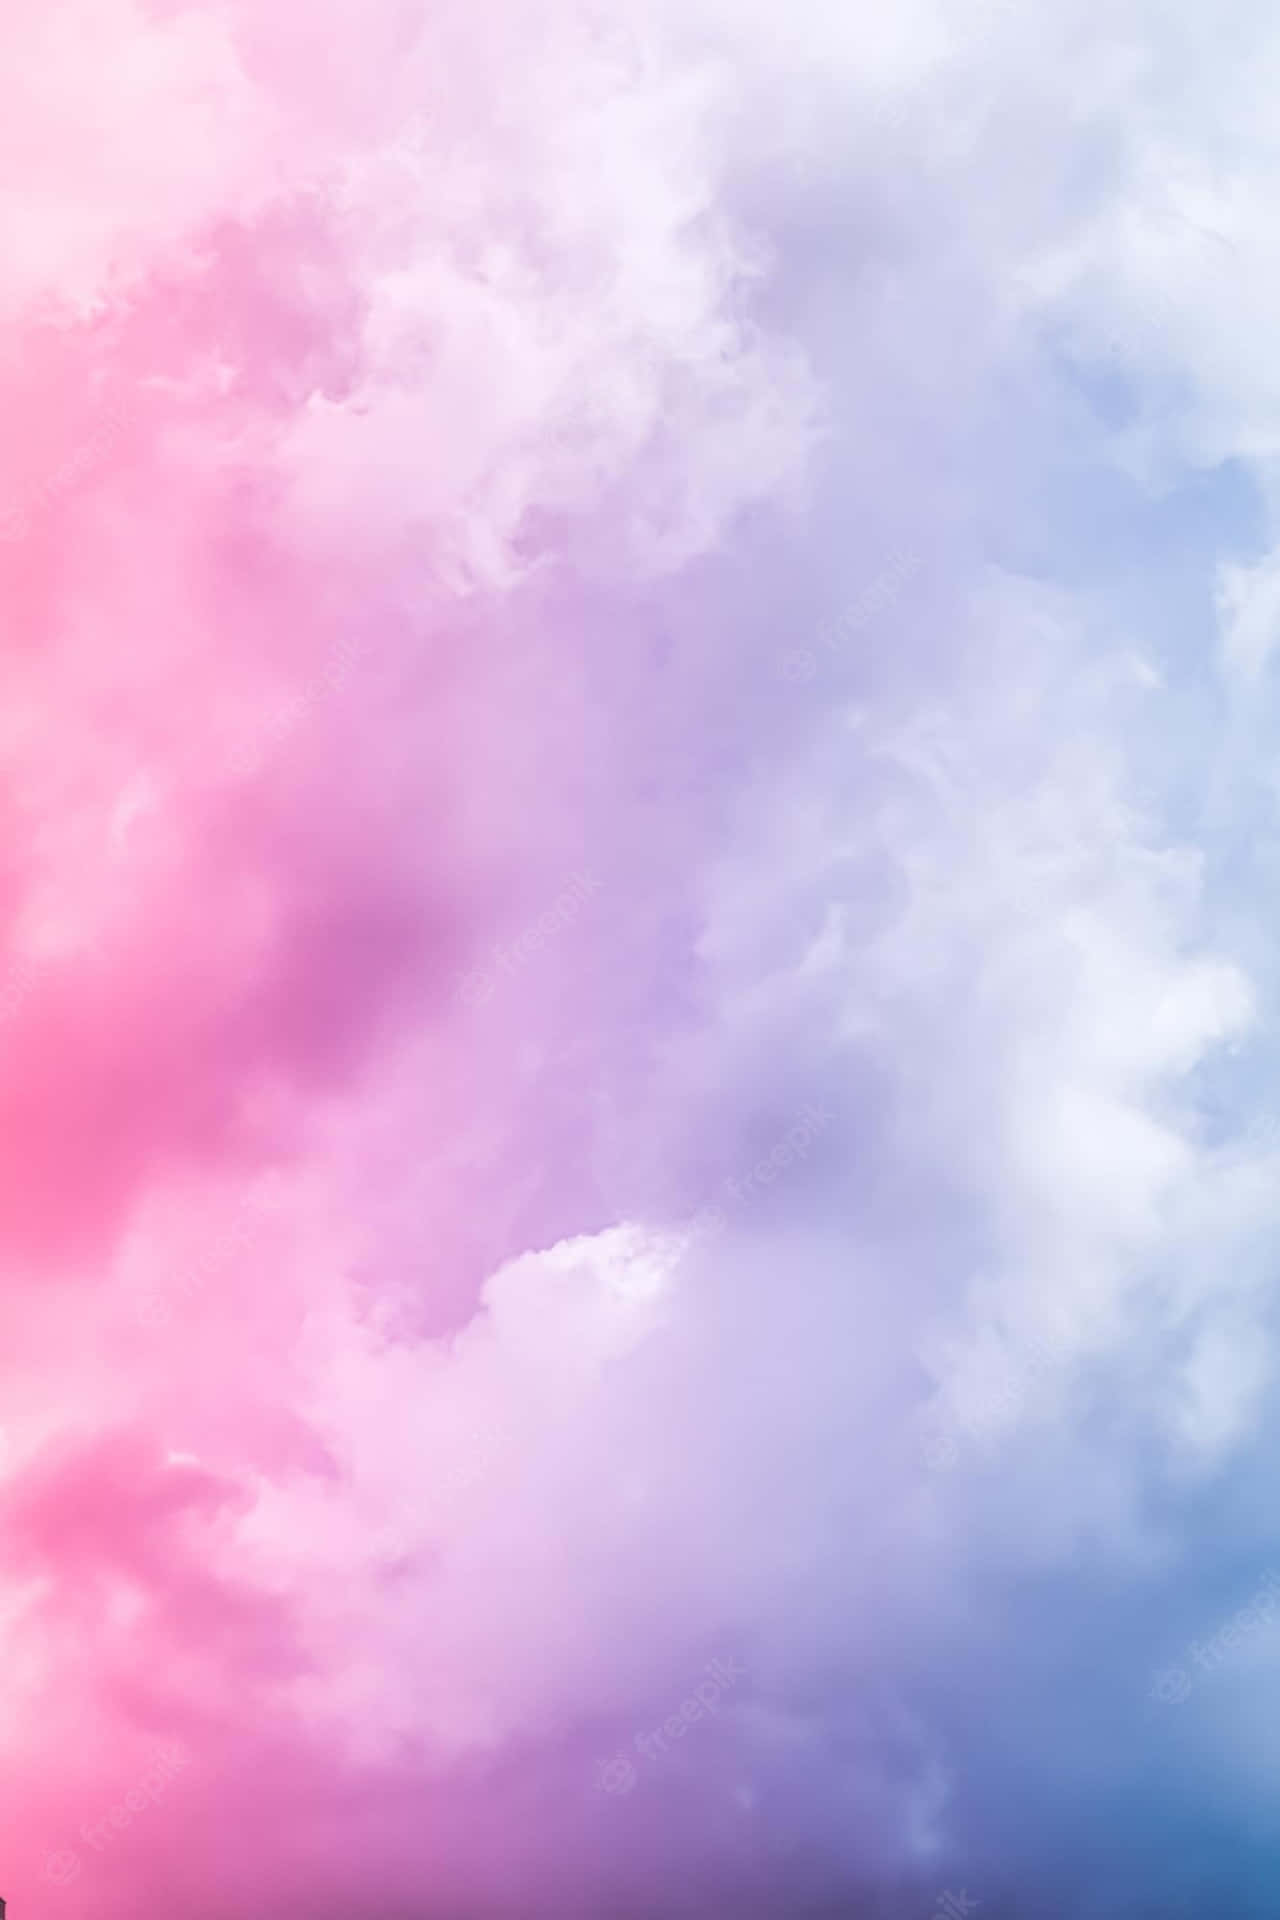 Rosae Azul Nuvem - Belas Nuvens Rosa E Azul Beijando O Céu. Papel de Parede